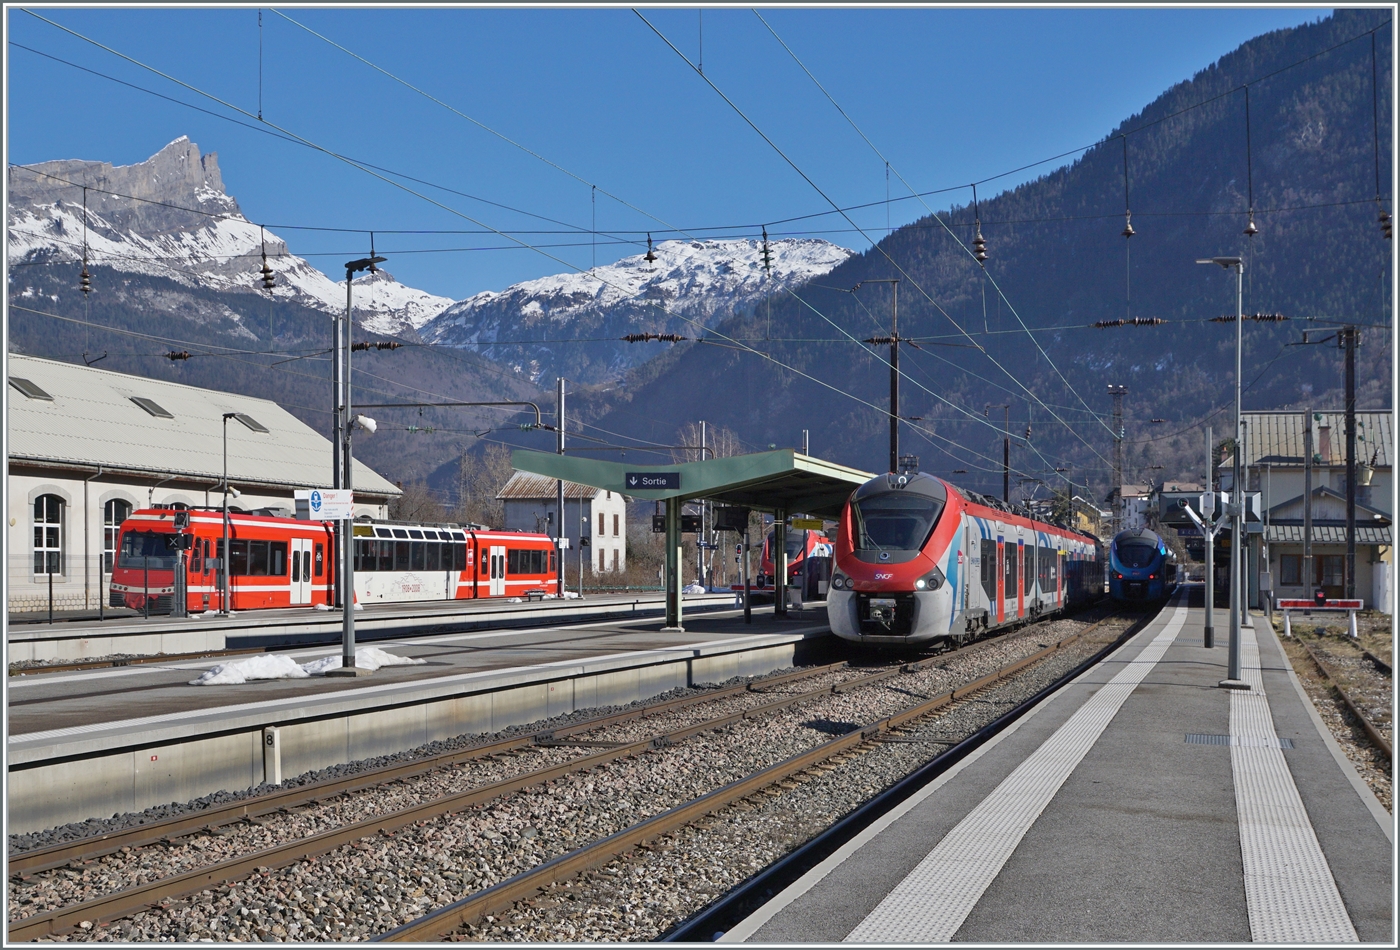 Blick auf den Bahnhof von St-Gervais Les Bains Le Fayet mit verschiedenen, z.T. verdeckten Zügen der SNCF in Normal- und Schmalspur. Links eine SNCF X 850, in der Bildmitte SNCF Z 31500 in Léman Express Lackierung. 

14.02.2023